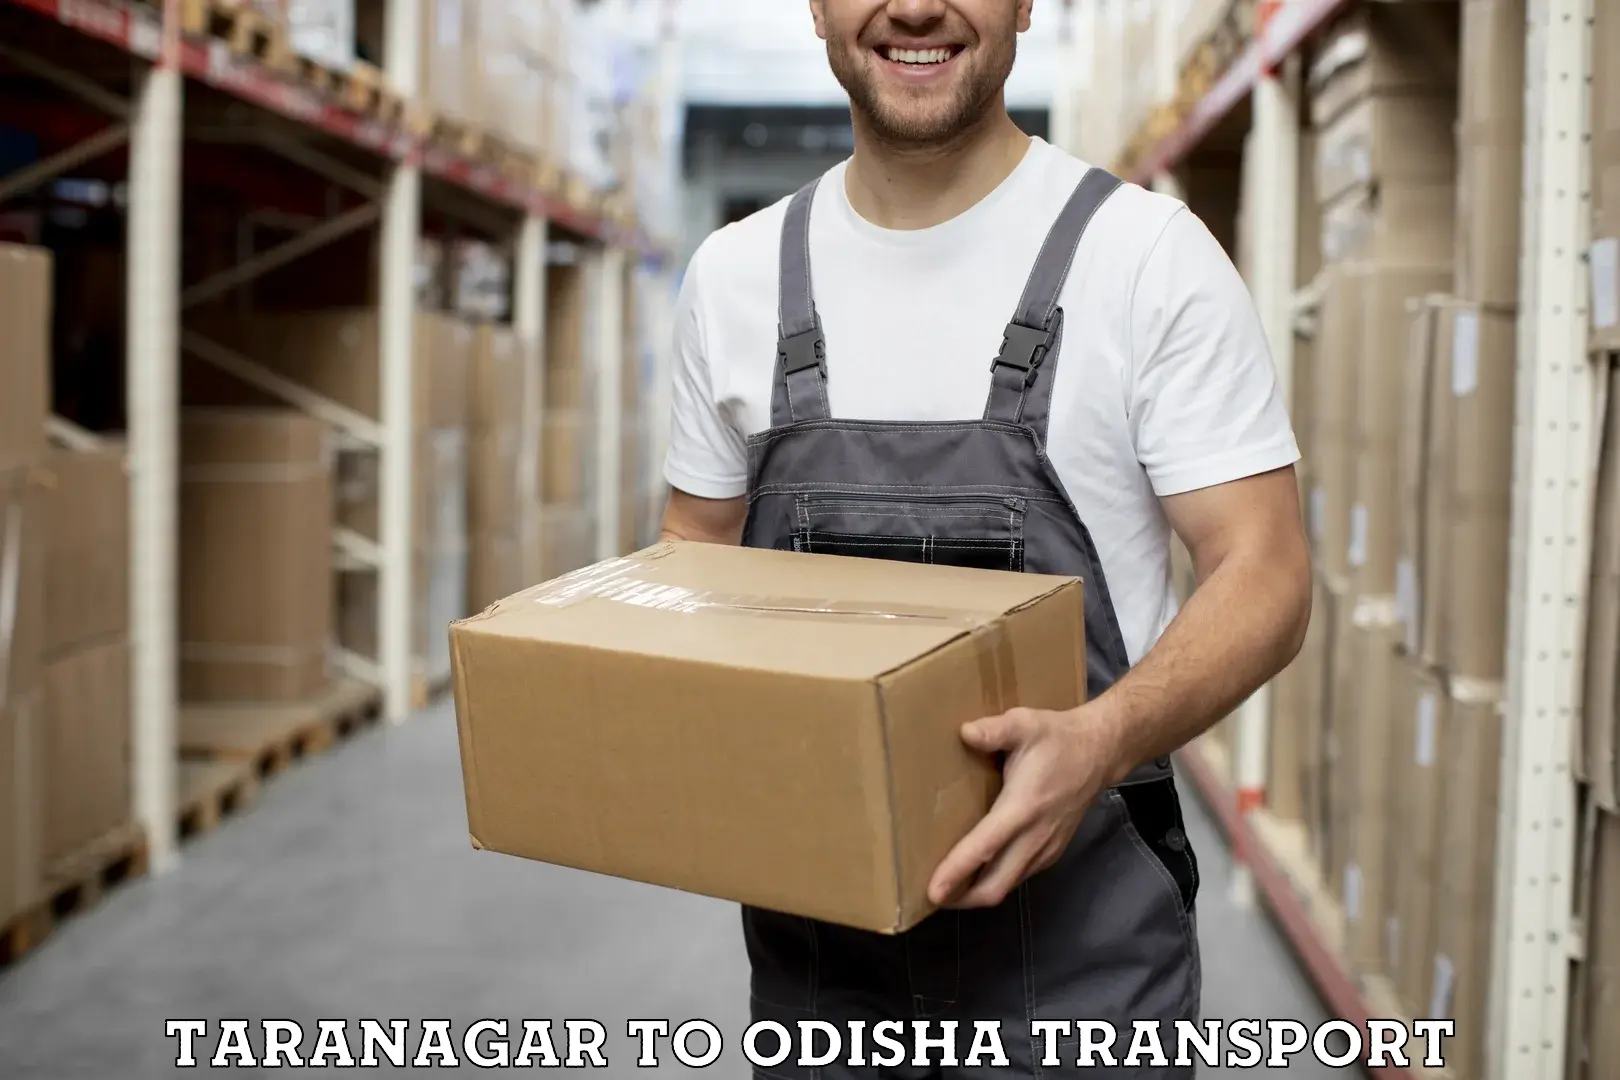 Furniture transport service in Taranagar to Rourkela